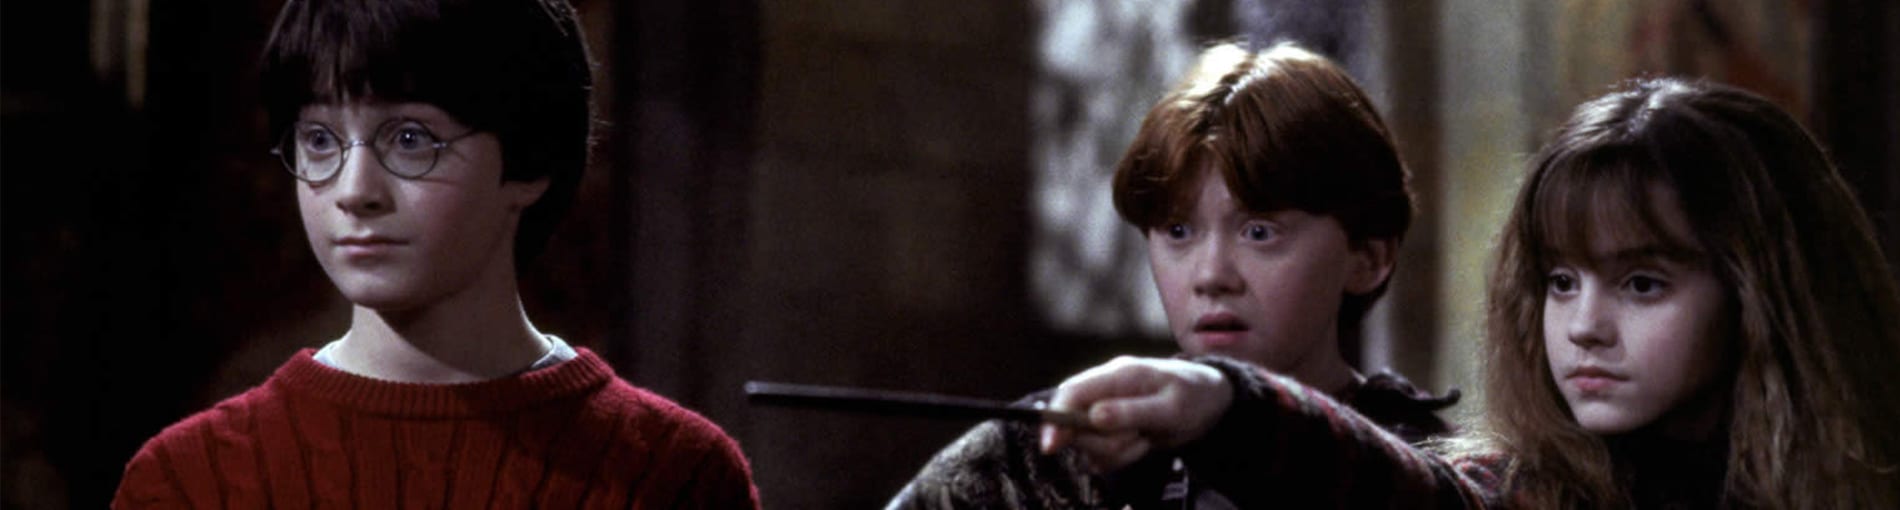 5 razones para ver… Harry Potter y la Piedra Filosofal